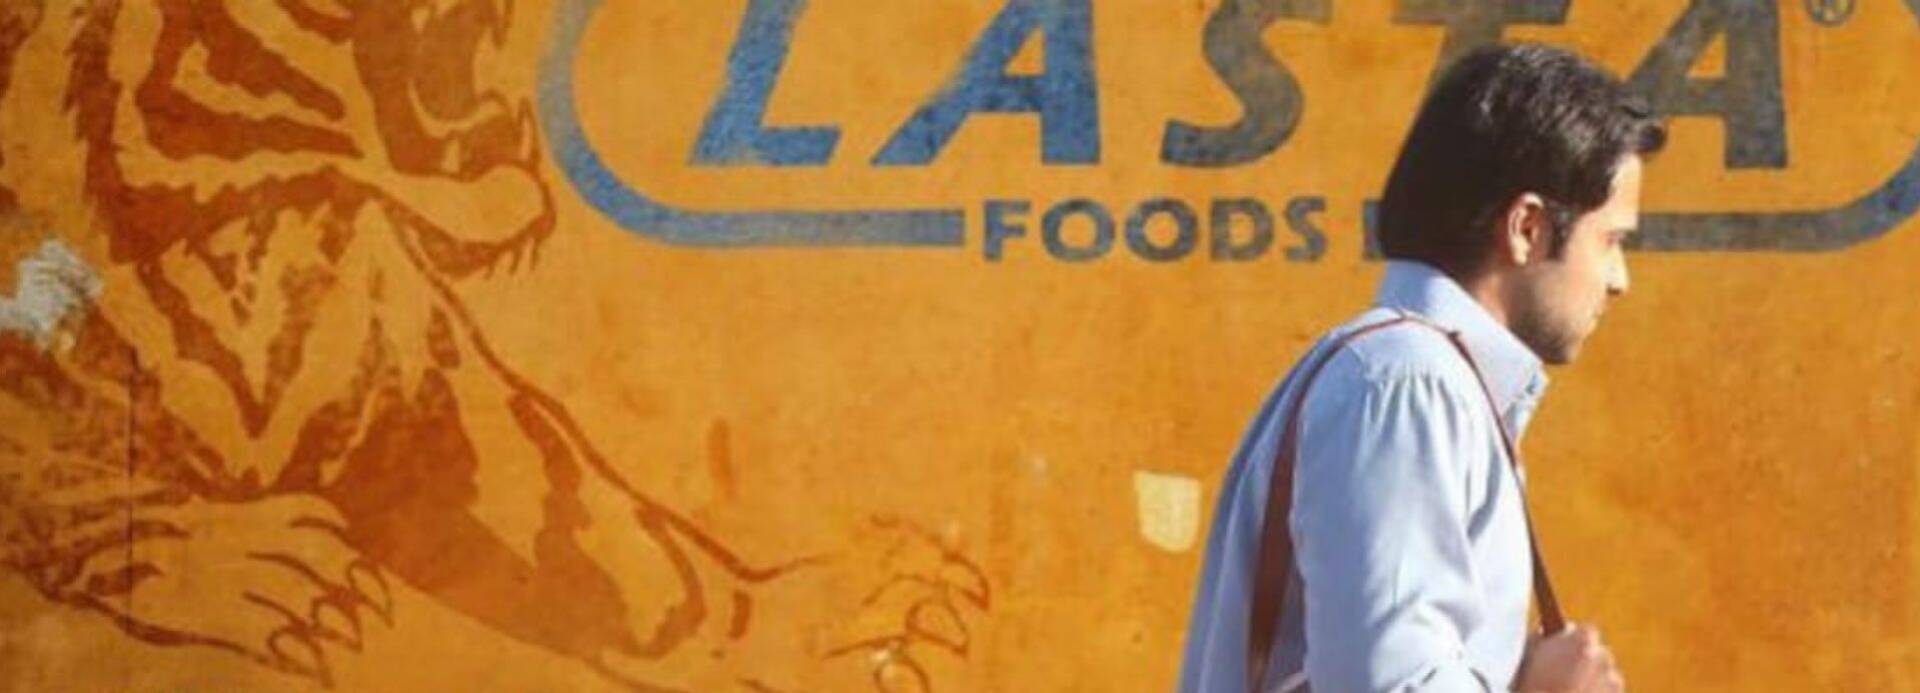 Ayan, Protagonist aus dem Film Tigers, geht mit gesenktem Kopf am Logo des Lebensmittelkonzerns Lasta vorbei